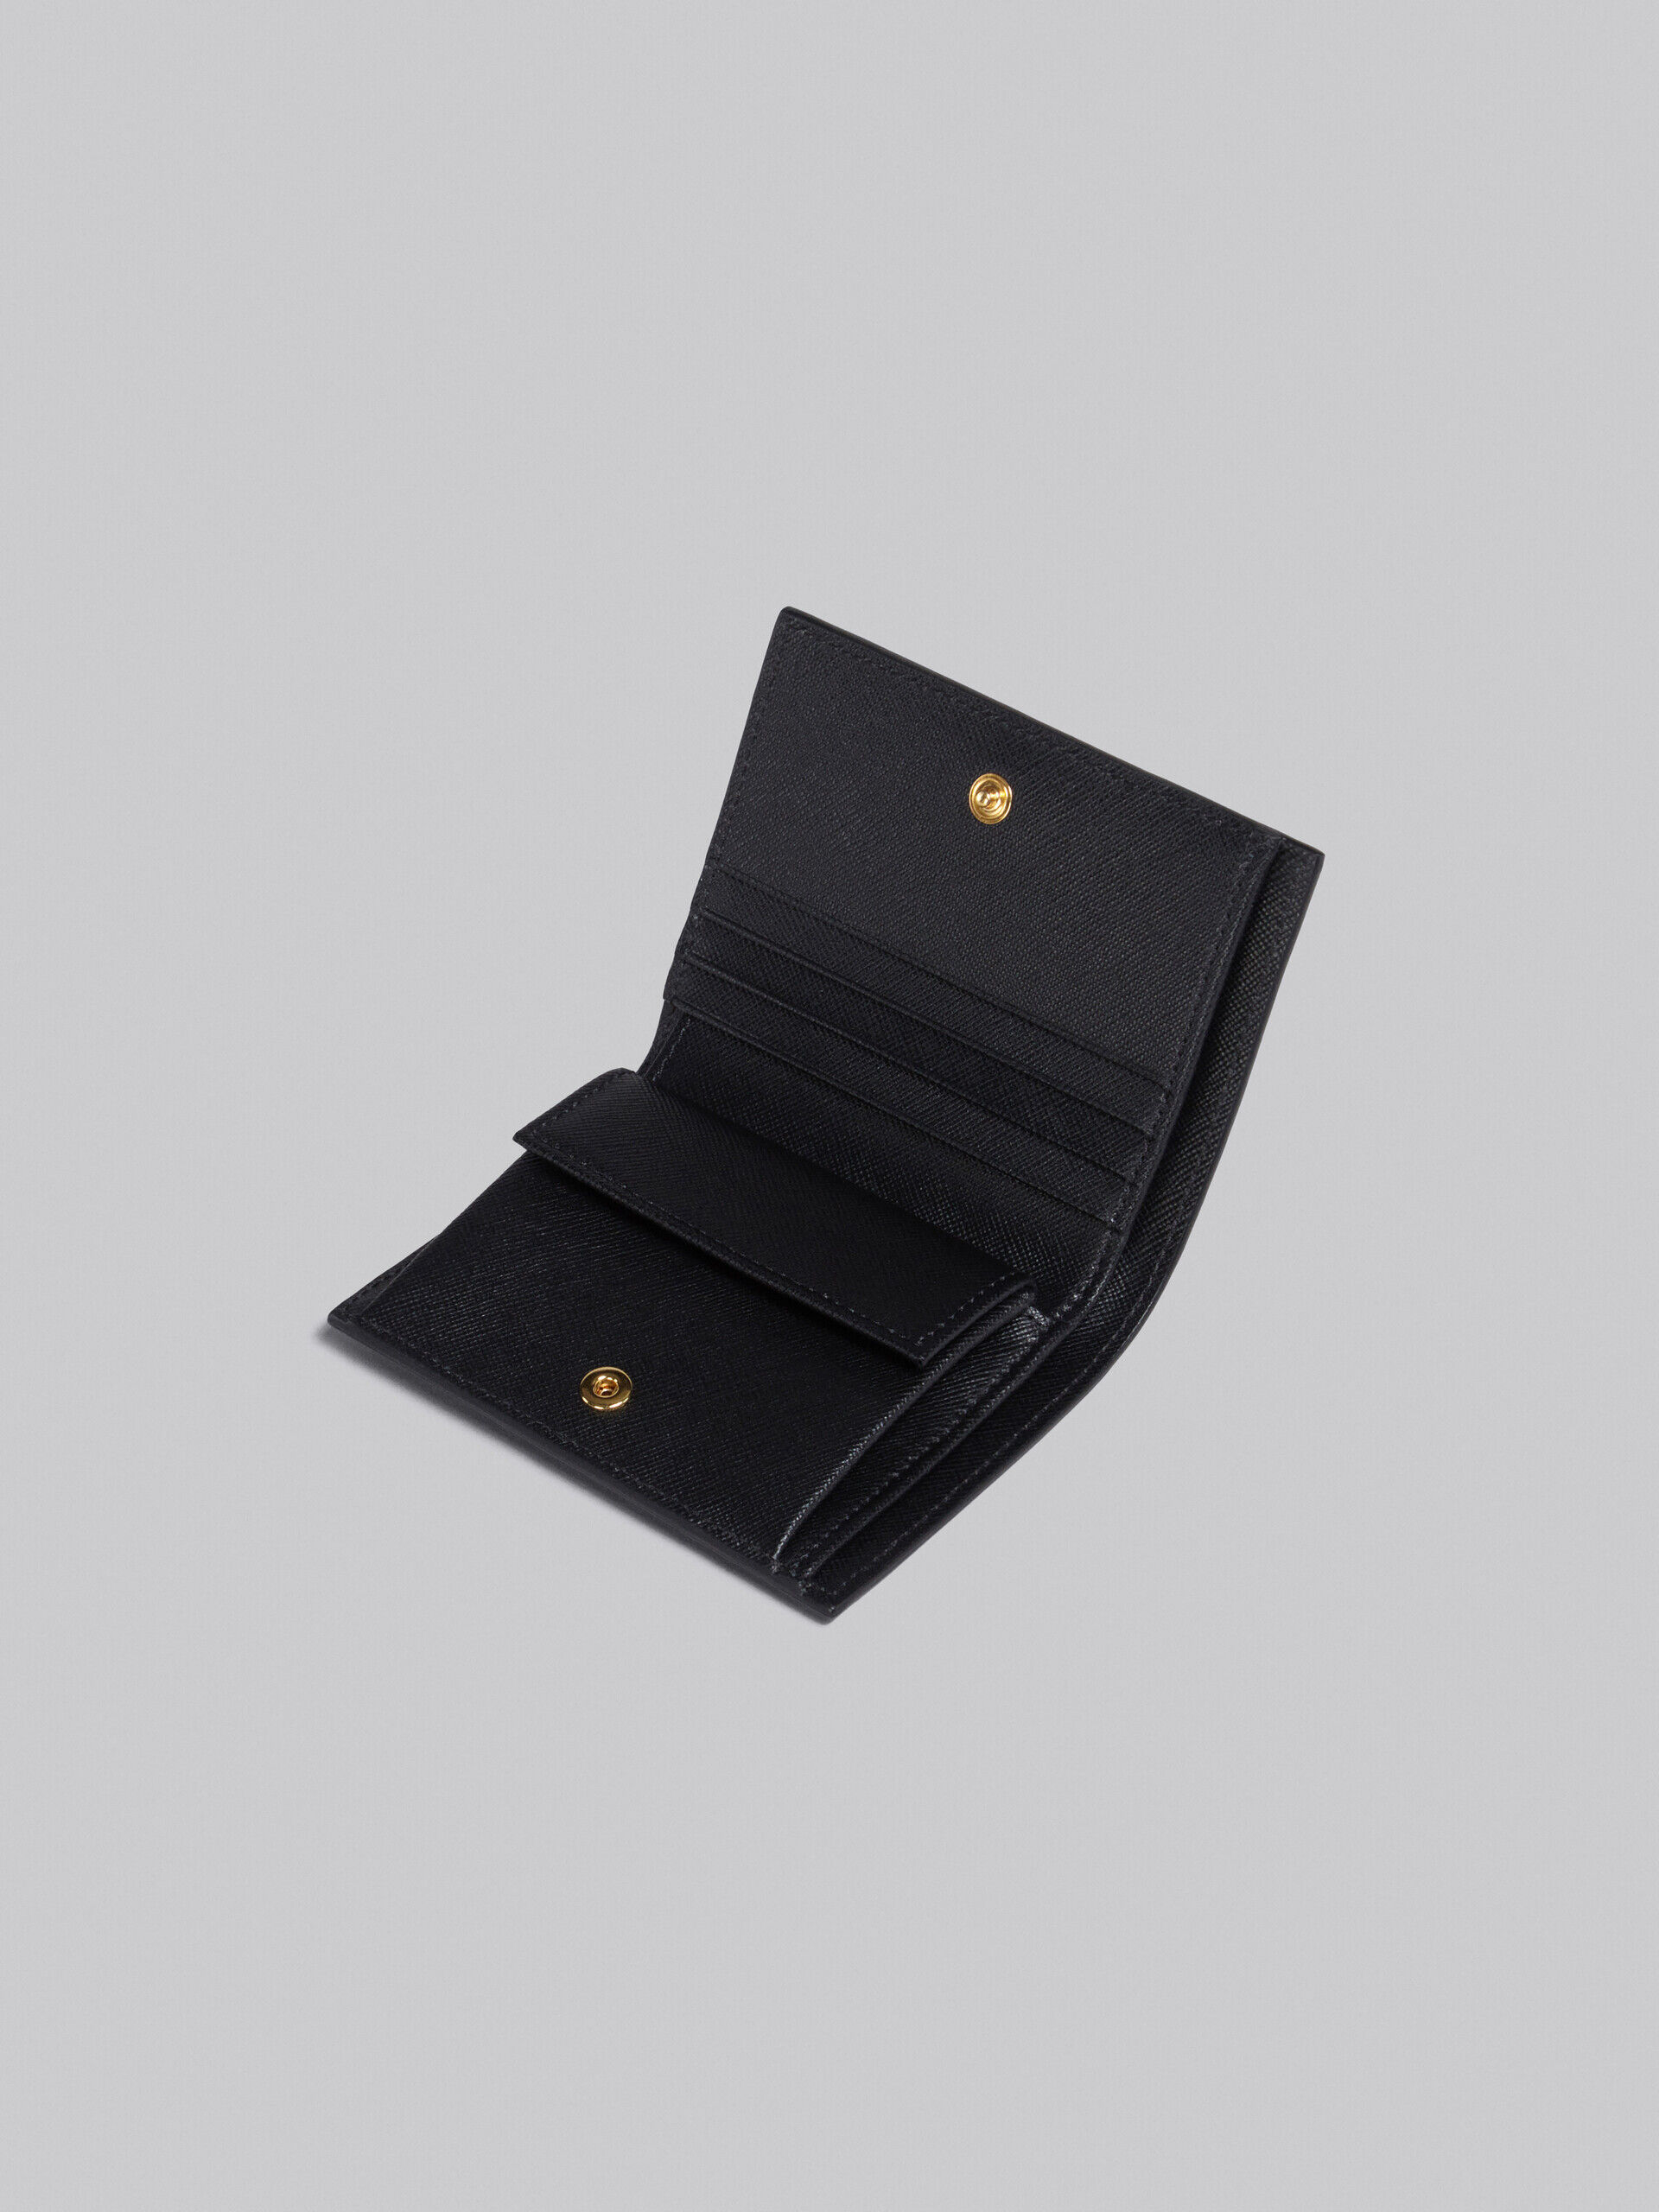 マルニ財布値下げ歓迎【日本正規品・美品】Marni サフィアーノレザー製二つ折りウォレット